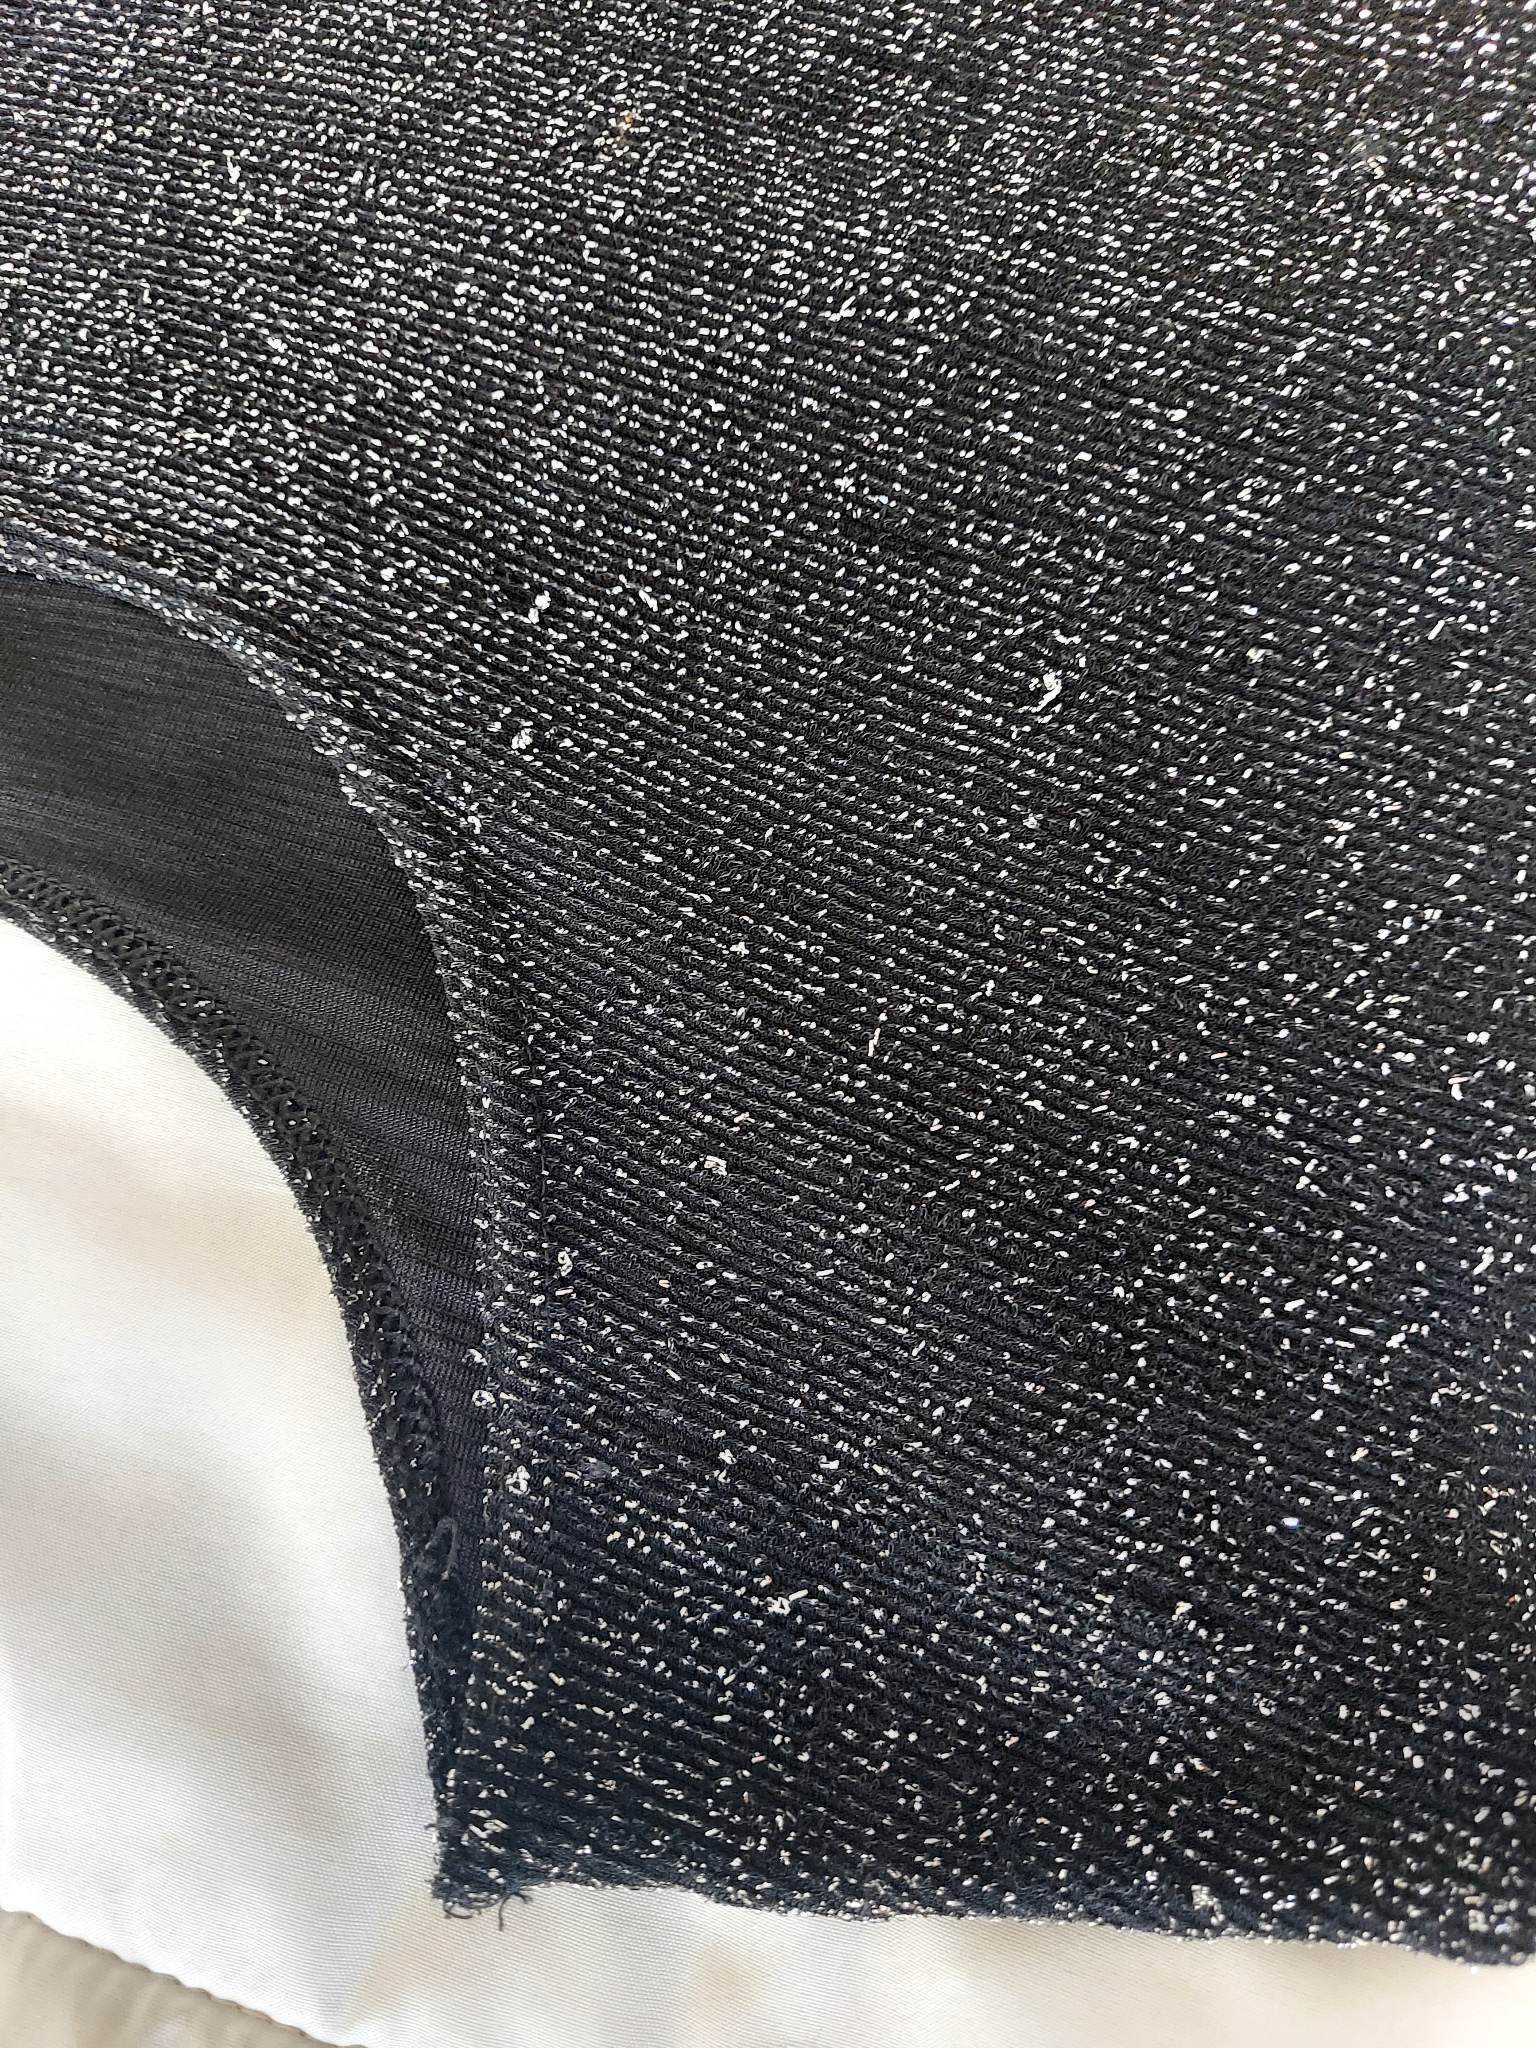 Bluzka wizytowa, czarna francuskiej firmy- srebrny brokat  Roz XL/.XXL